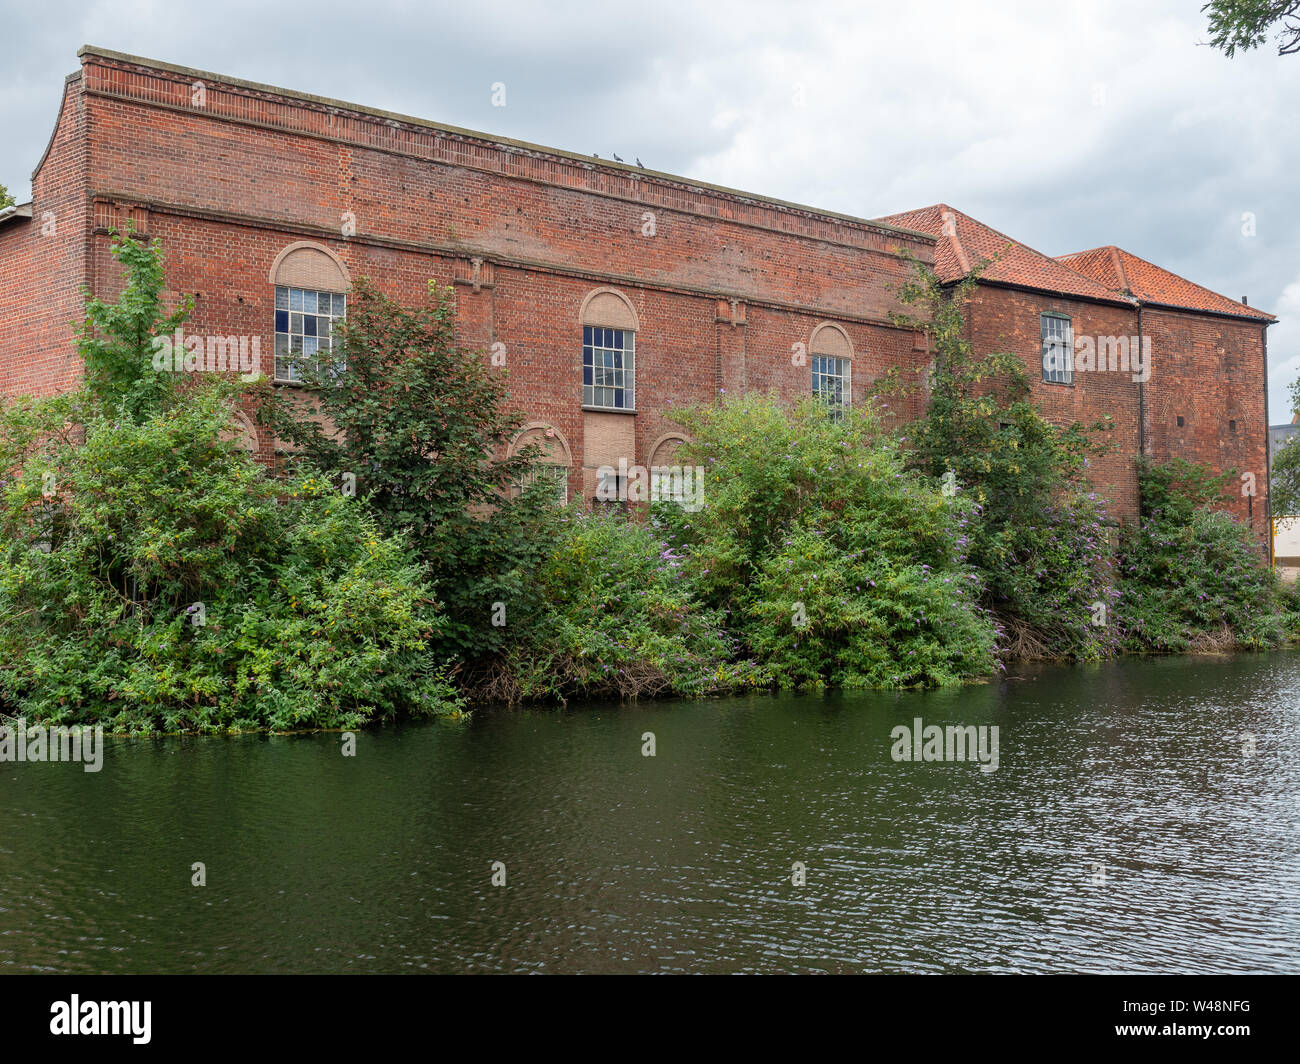 Un bâtiment en brique rouge à l'abandon sur les rives de la rivière Wensum dans Notwich, avec le feuillage en croissance sur elle Banque D'Images